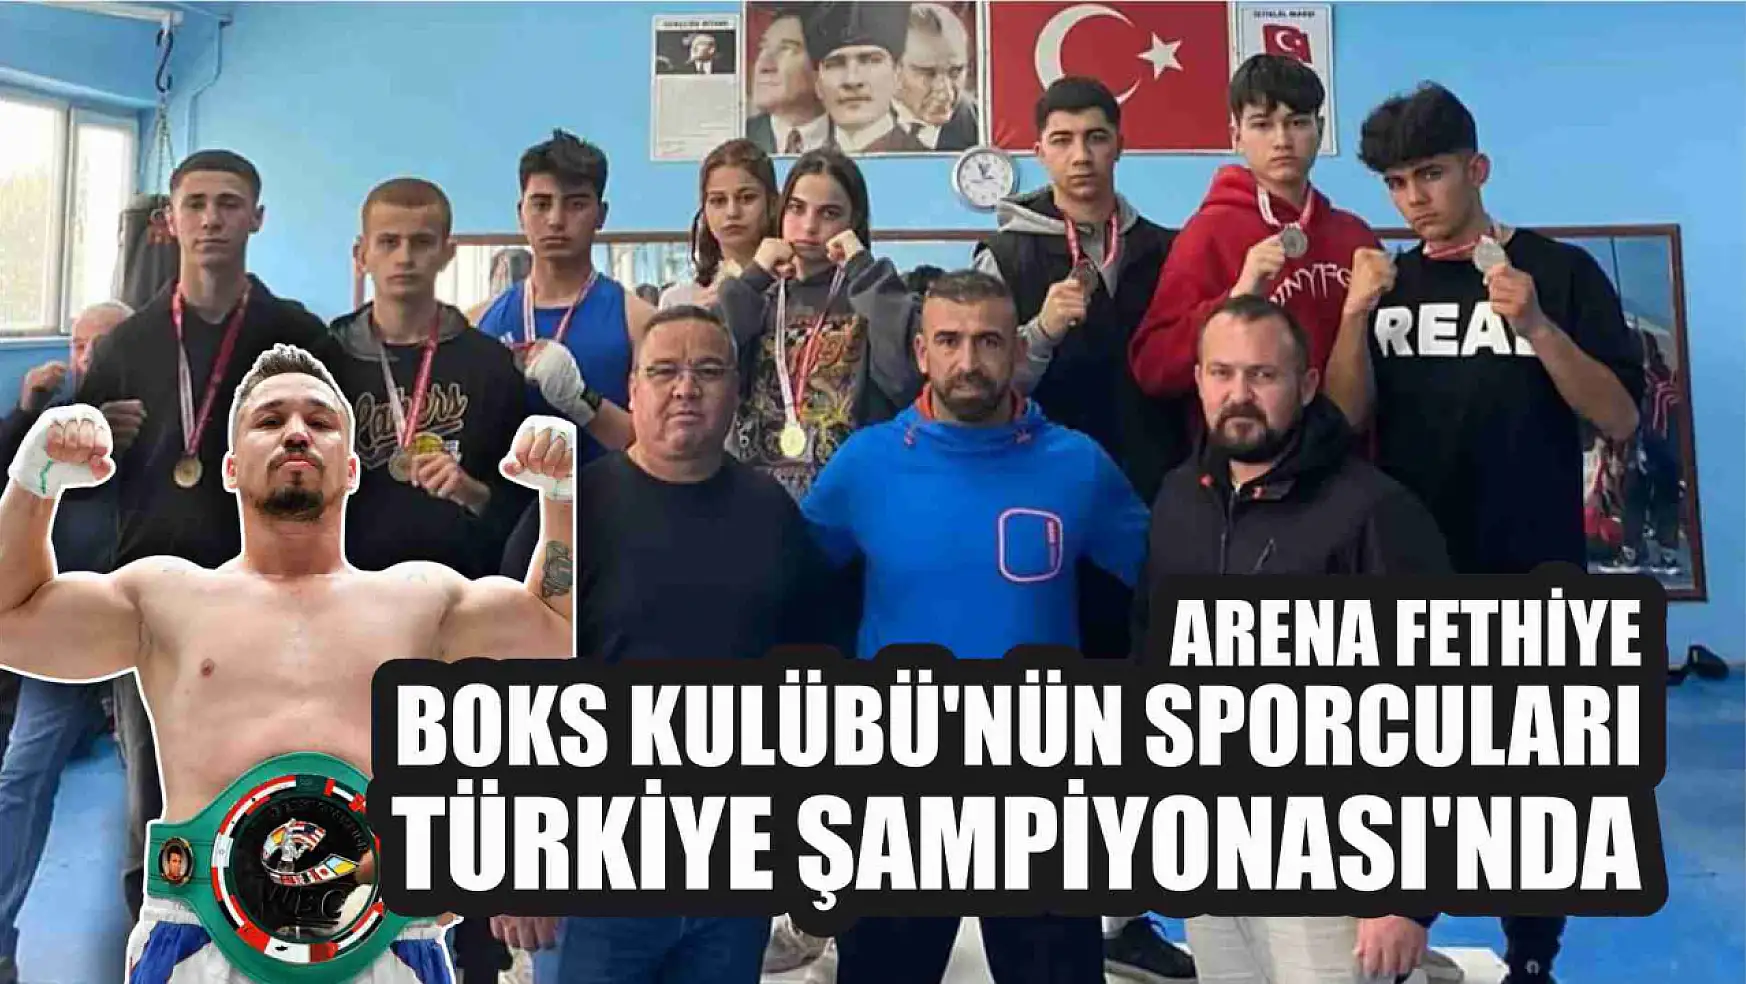 Arena Fethiye Boks Kulübü'nün sporcuları Türkiye Şampiyonası'nda